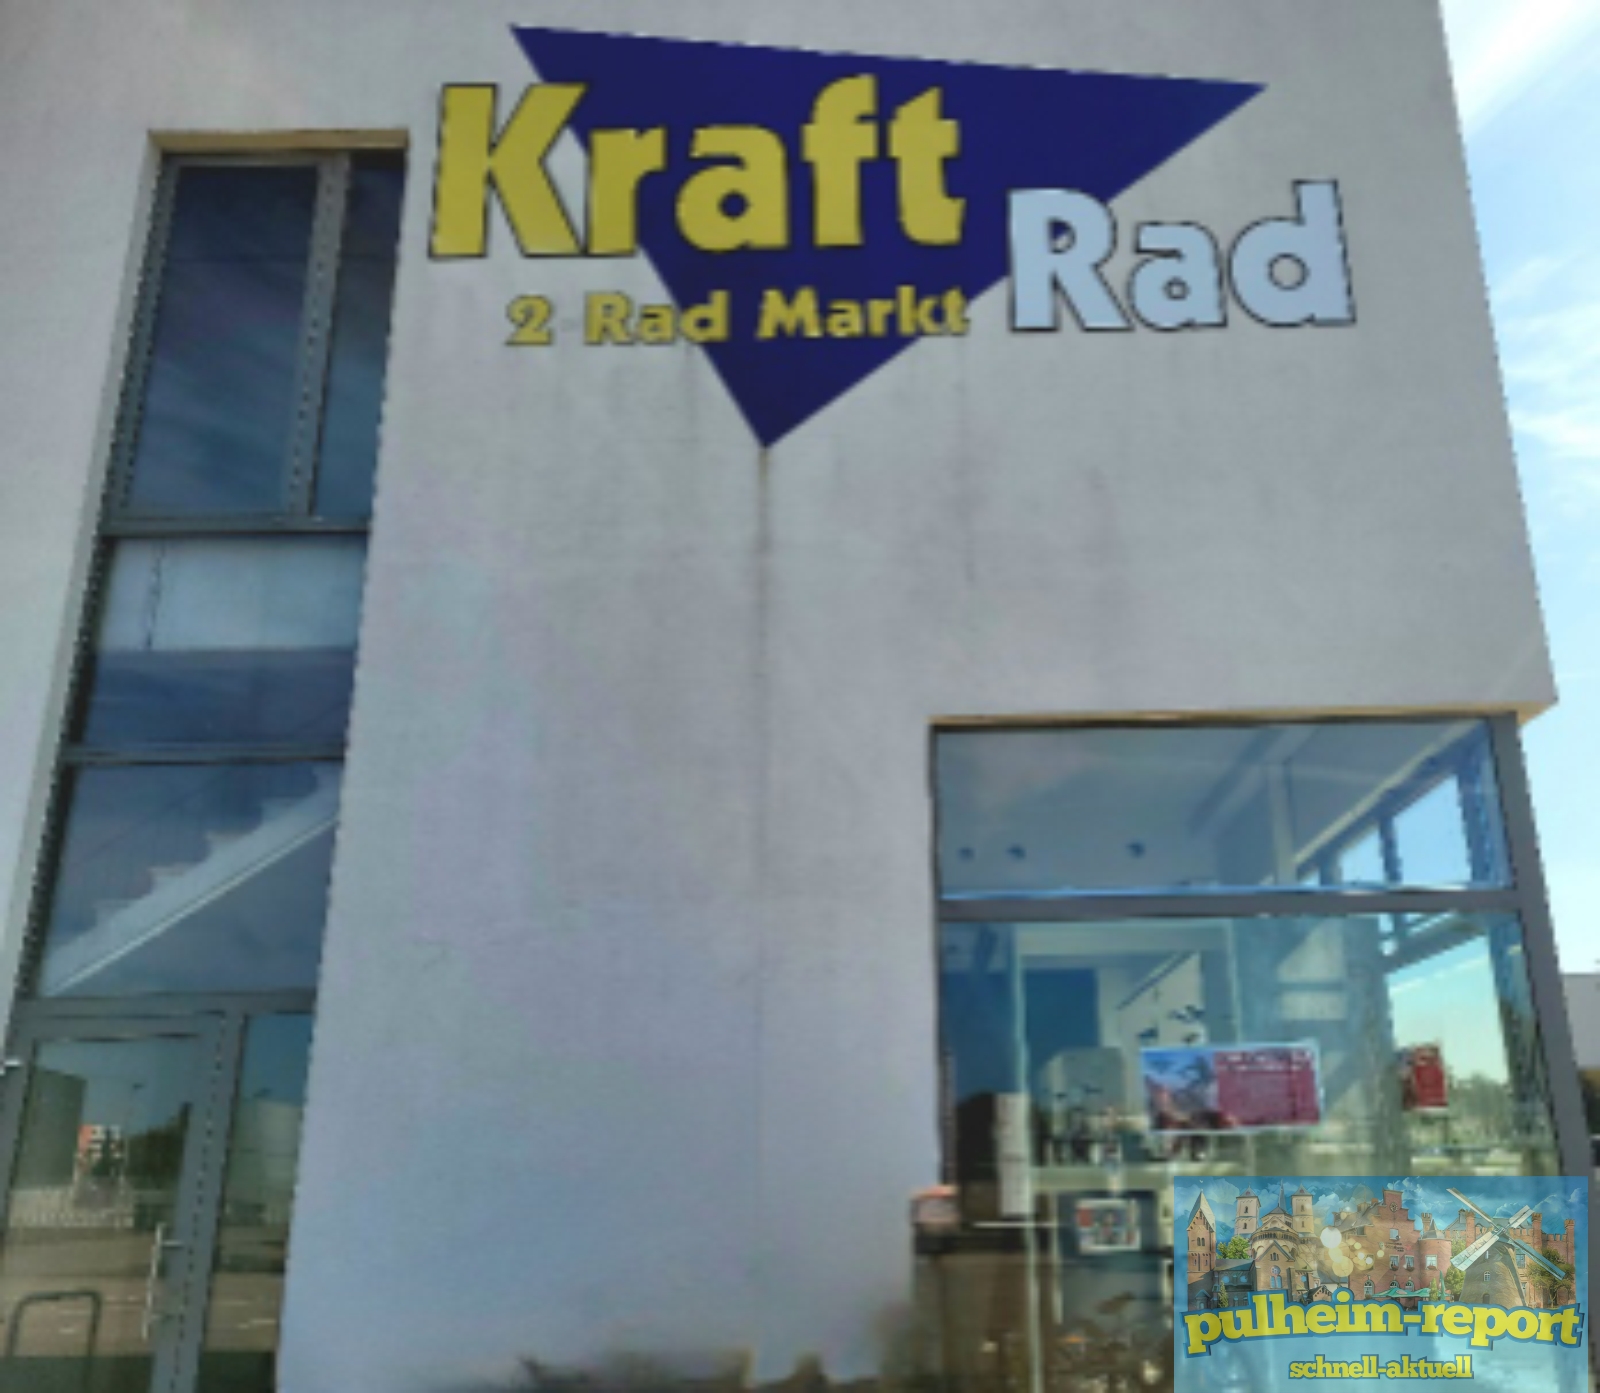 Kraft Rad in Pulheim schließt.